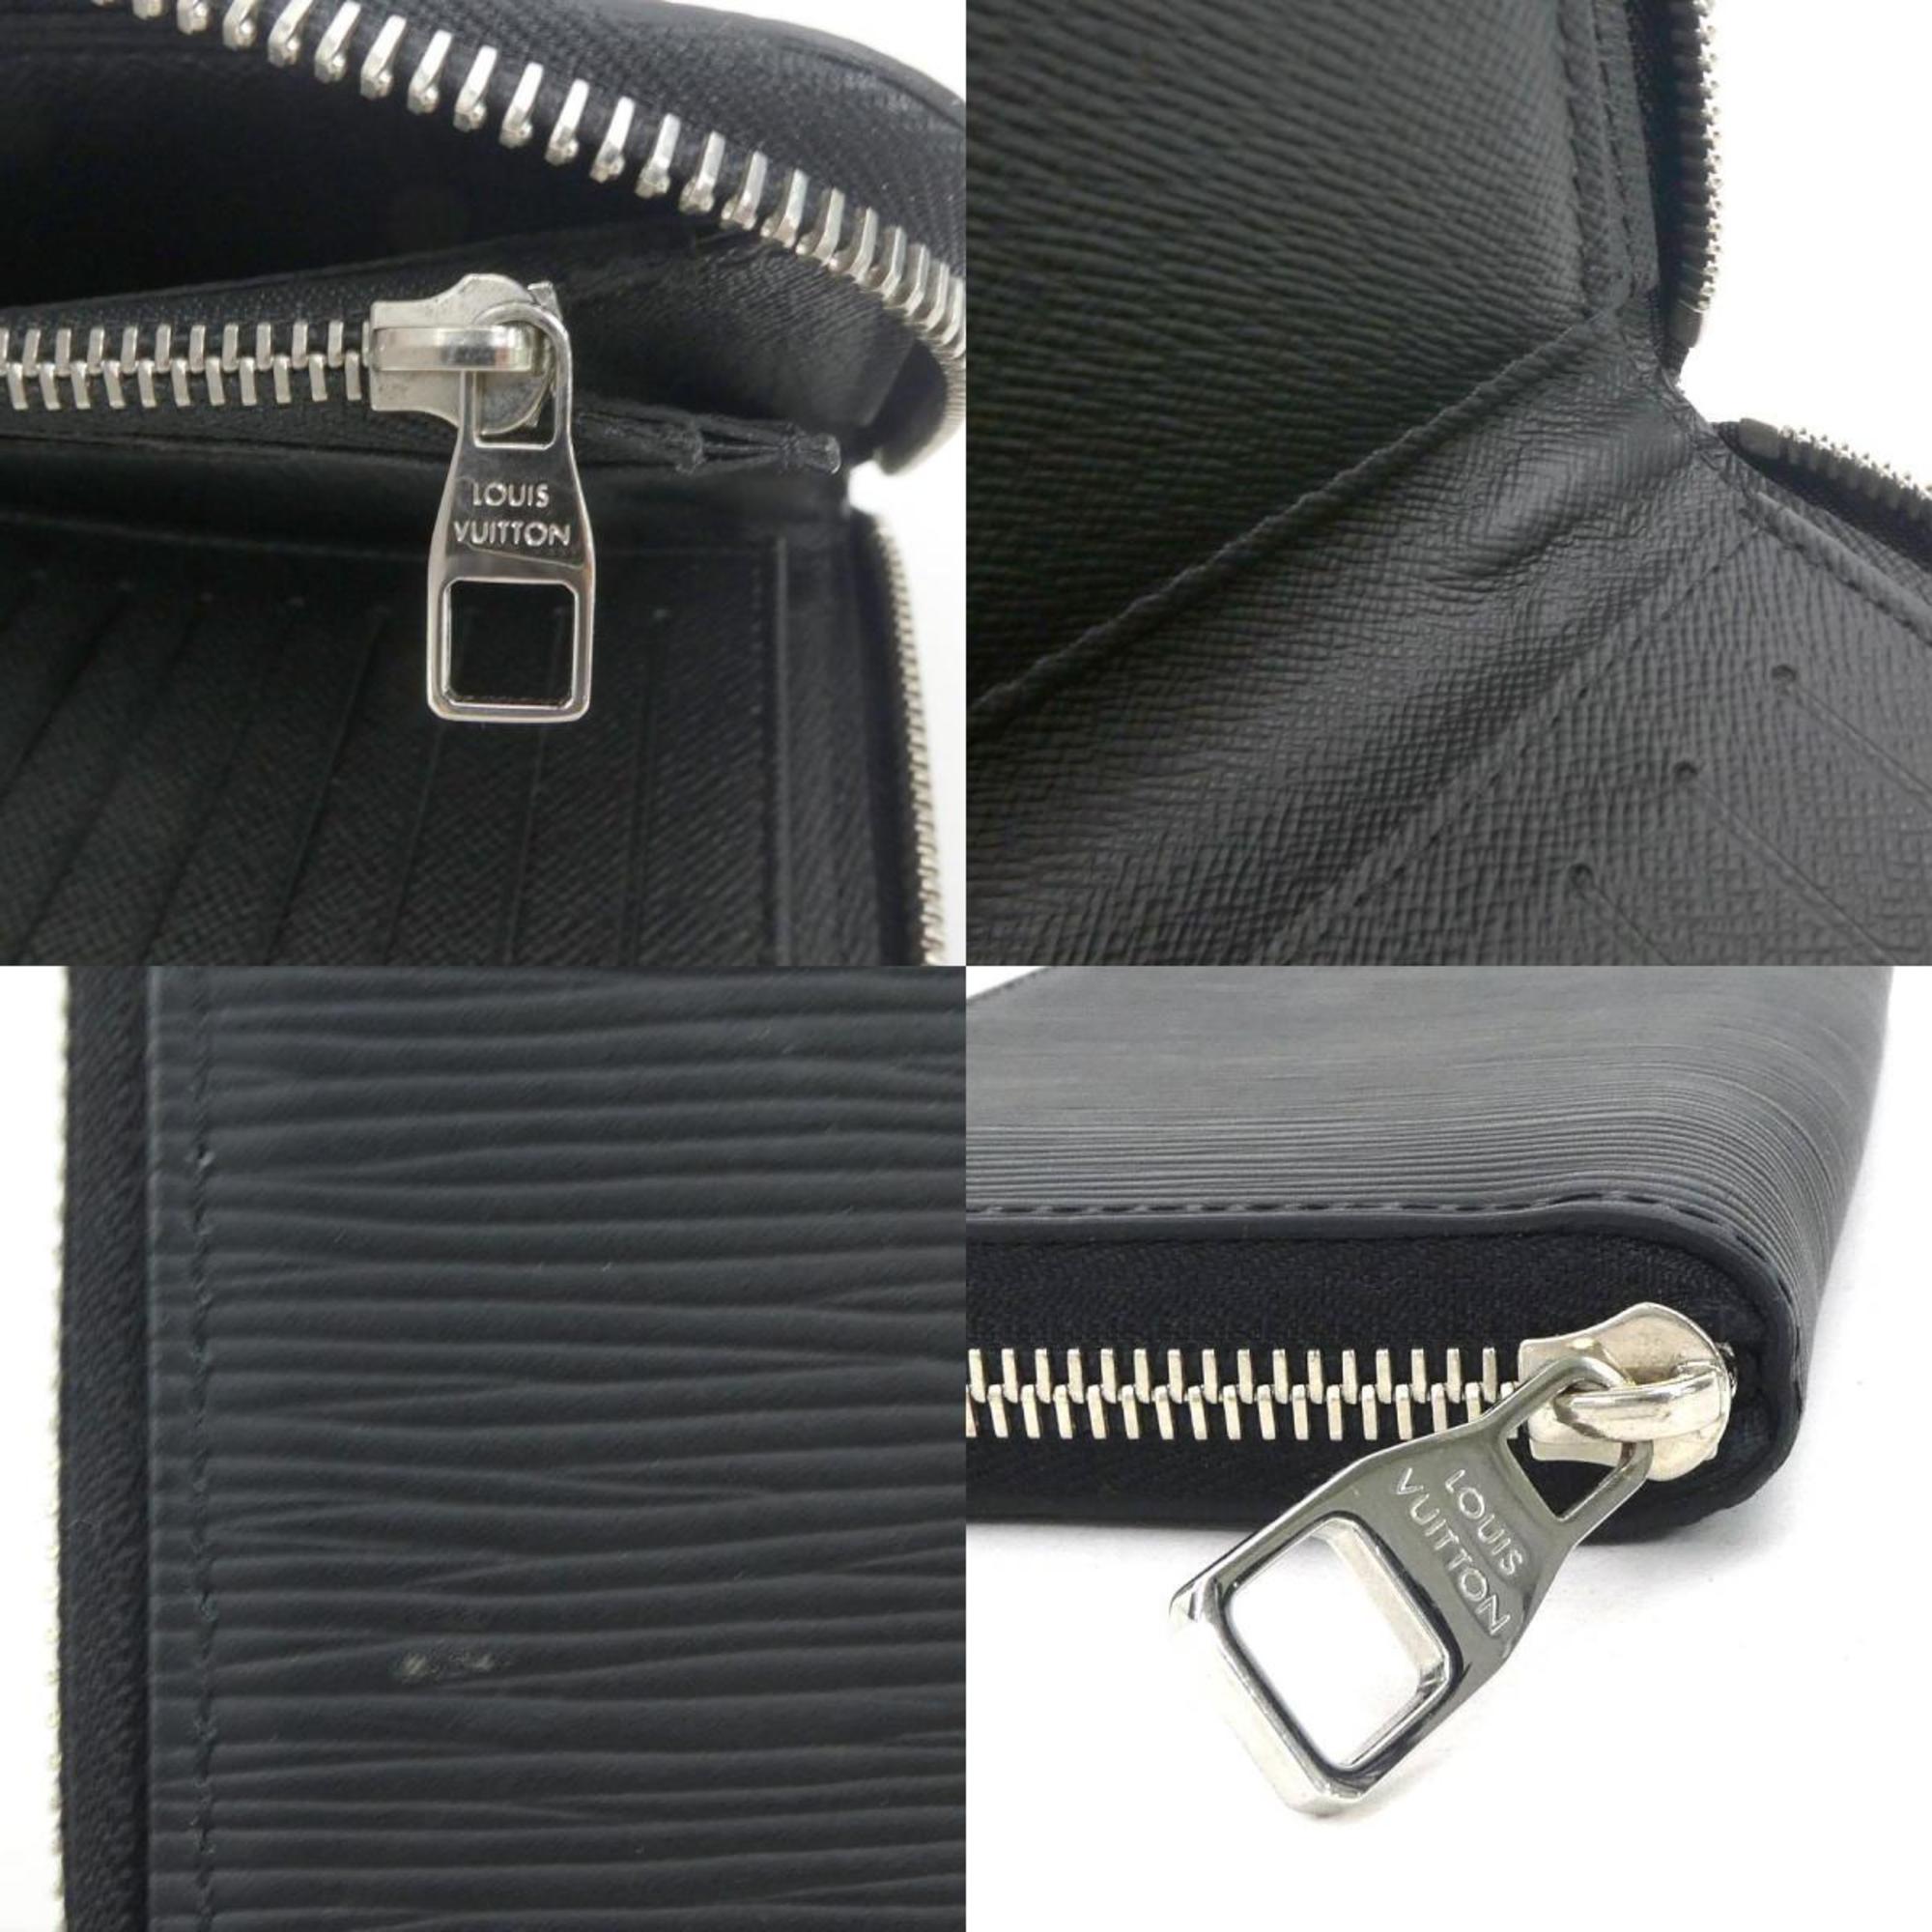 Louis Vuitton LOUIS VUITTON Round Long Wallet Epi Zipper Vertical Leather Noir Men's M60965 h30350f